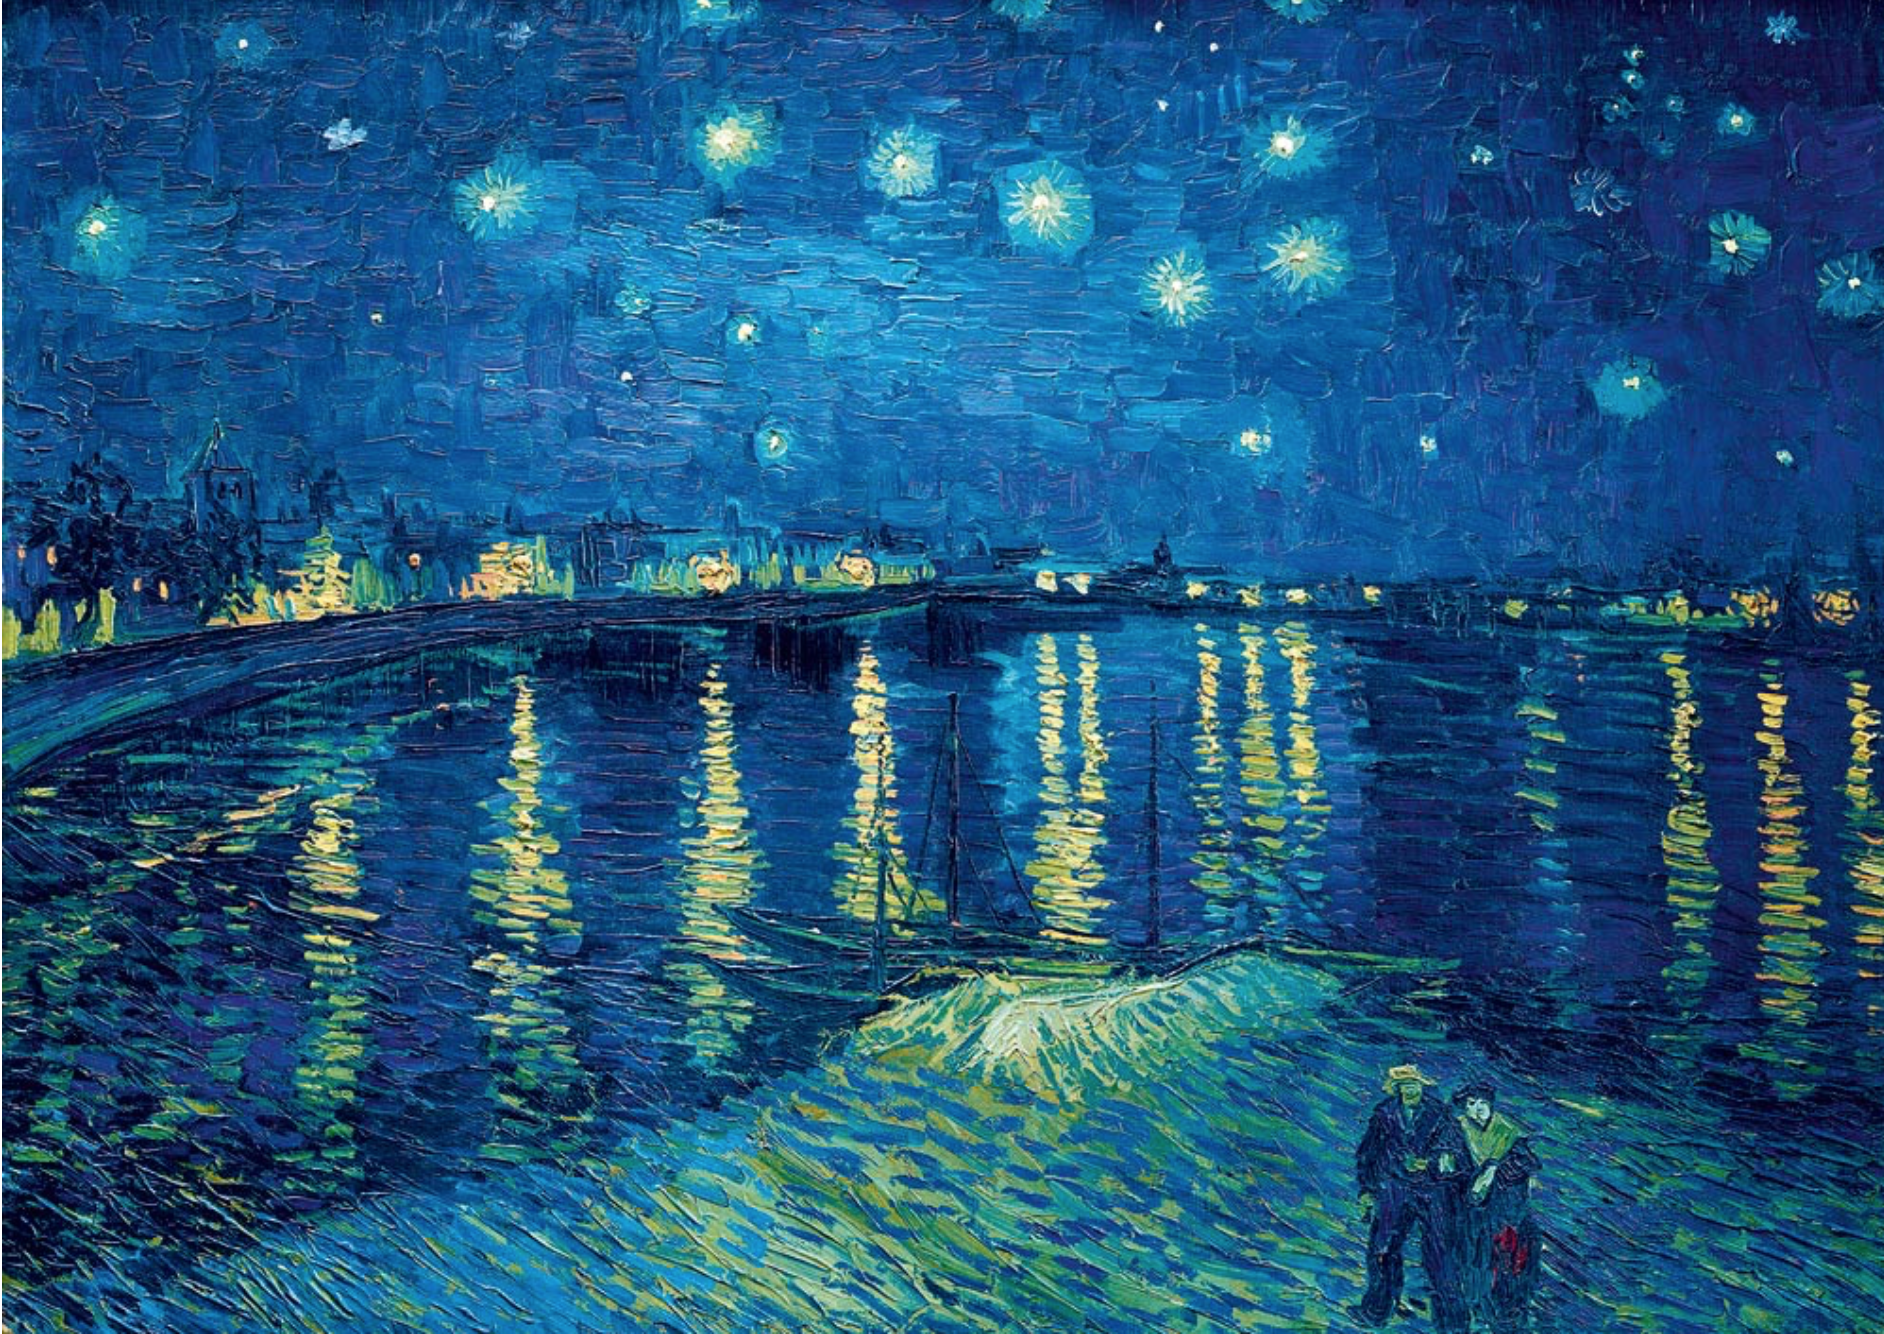 Puzzle d'art en bois, Nuit étoilée de Van Gogh 50 grosses pièces en bois